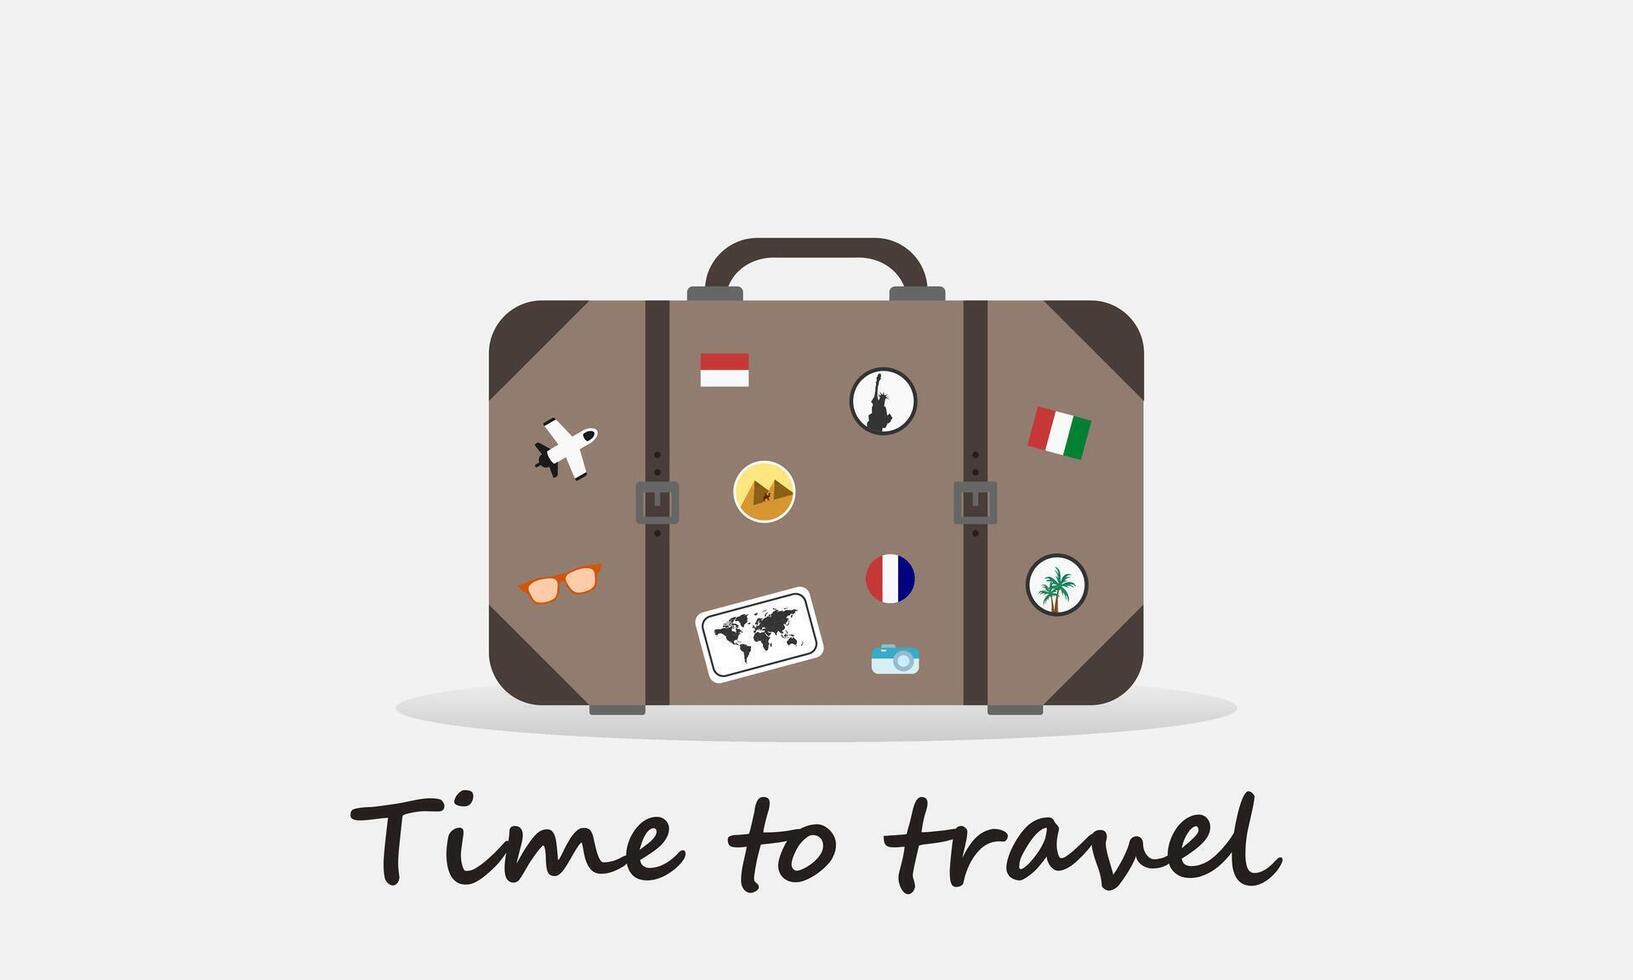 viaje concepto con antiguo Clásico cuero maleta con viaje pegatinas hora a viajar. vector ilustración.